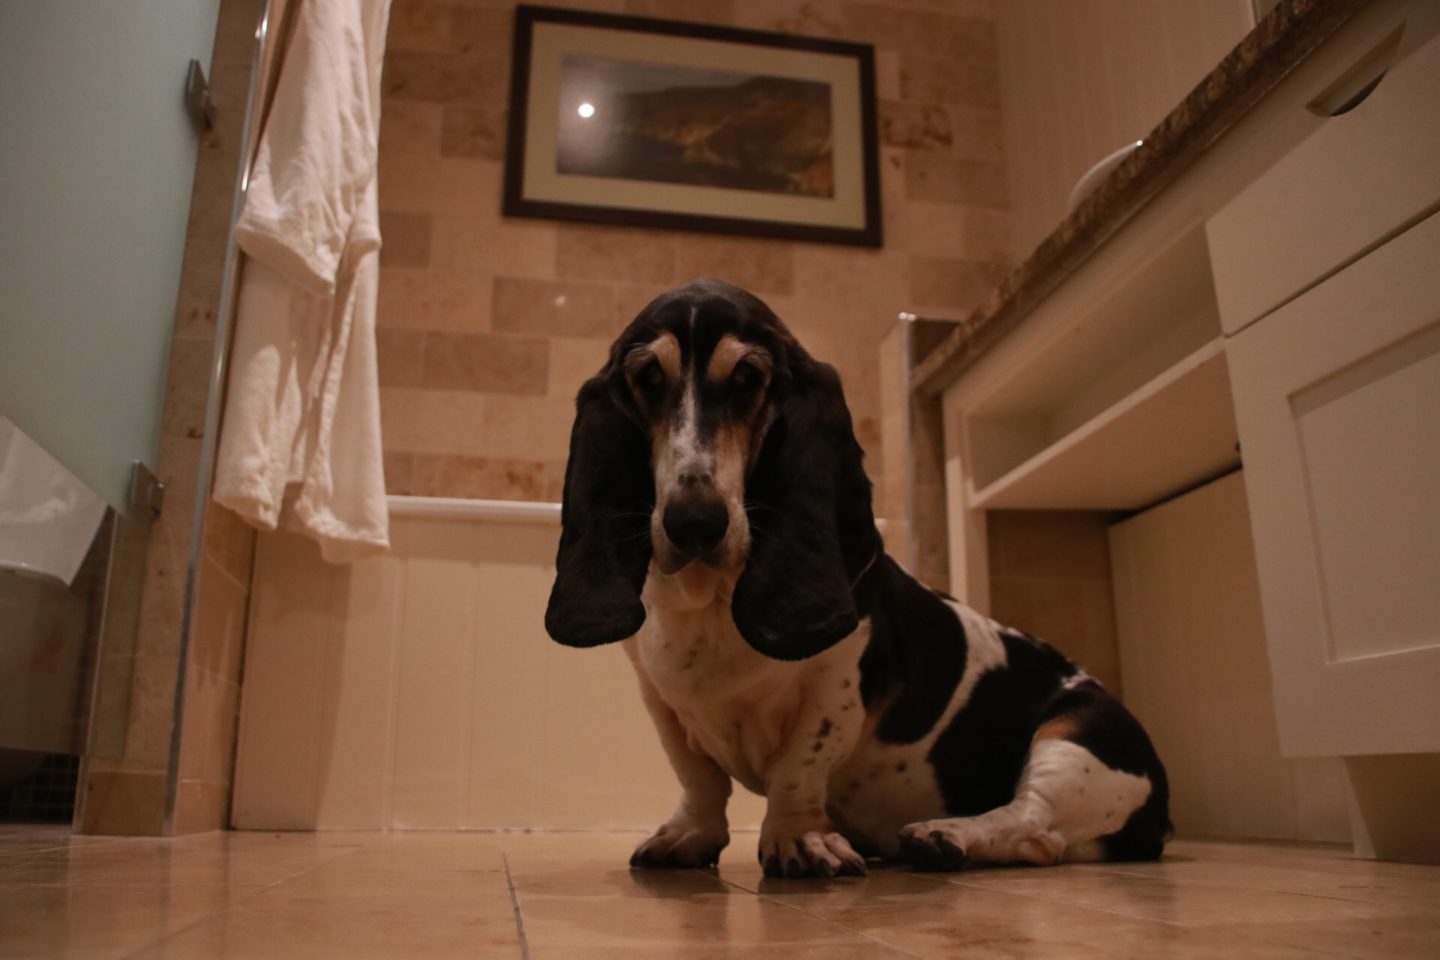 Dog friendly hotels ireland bathroom